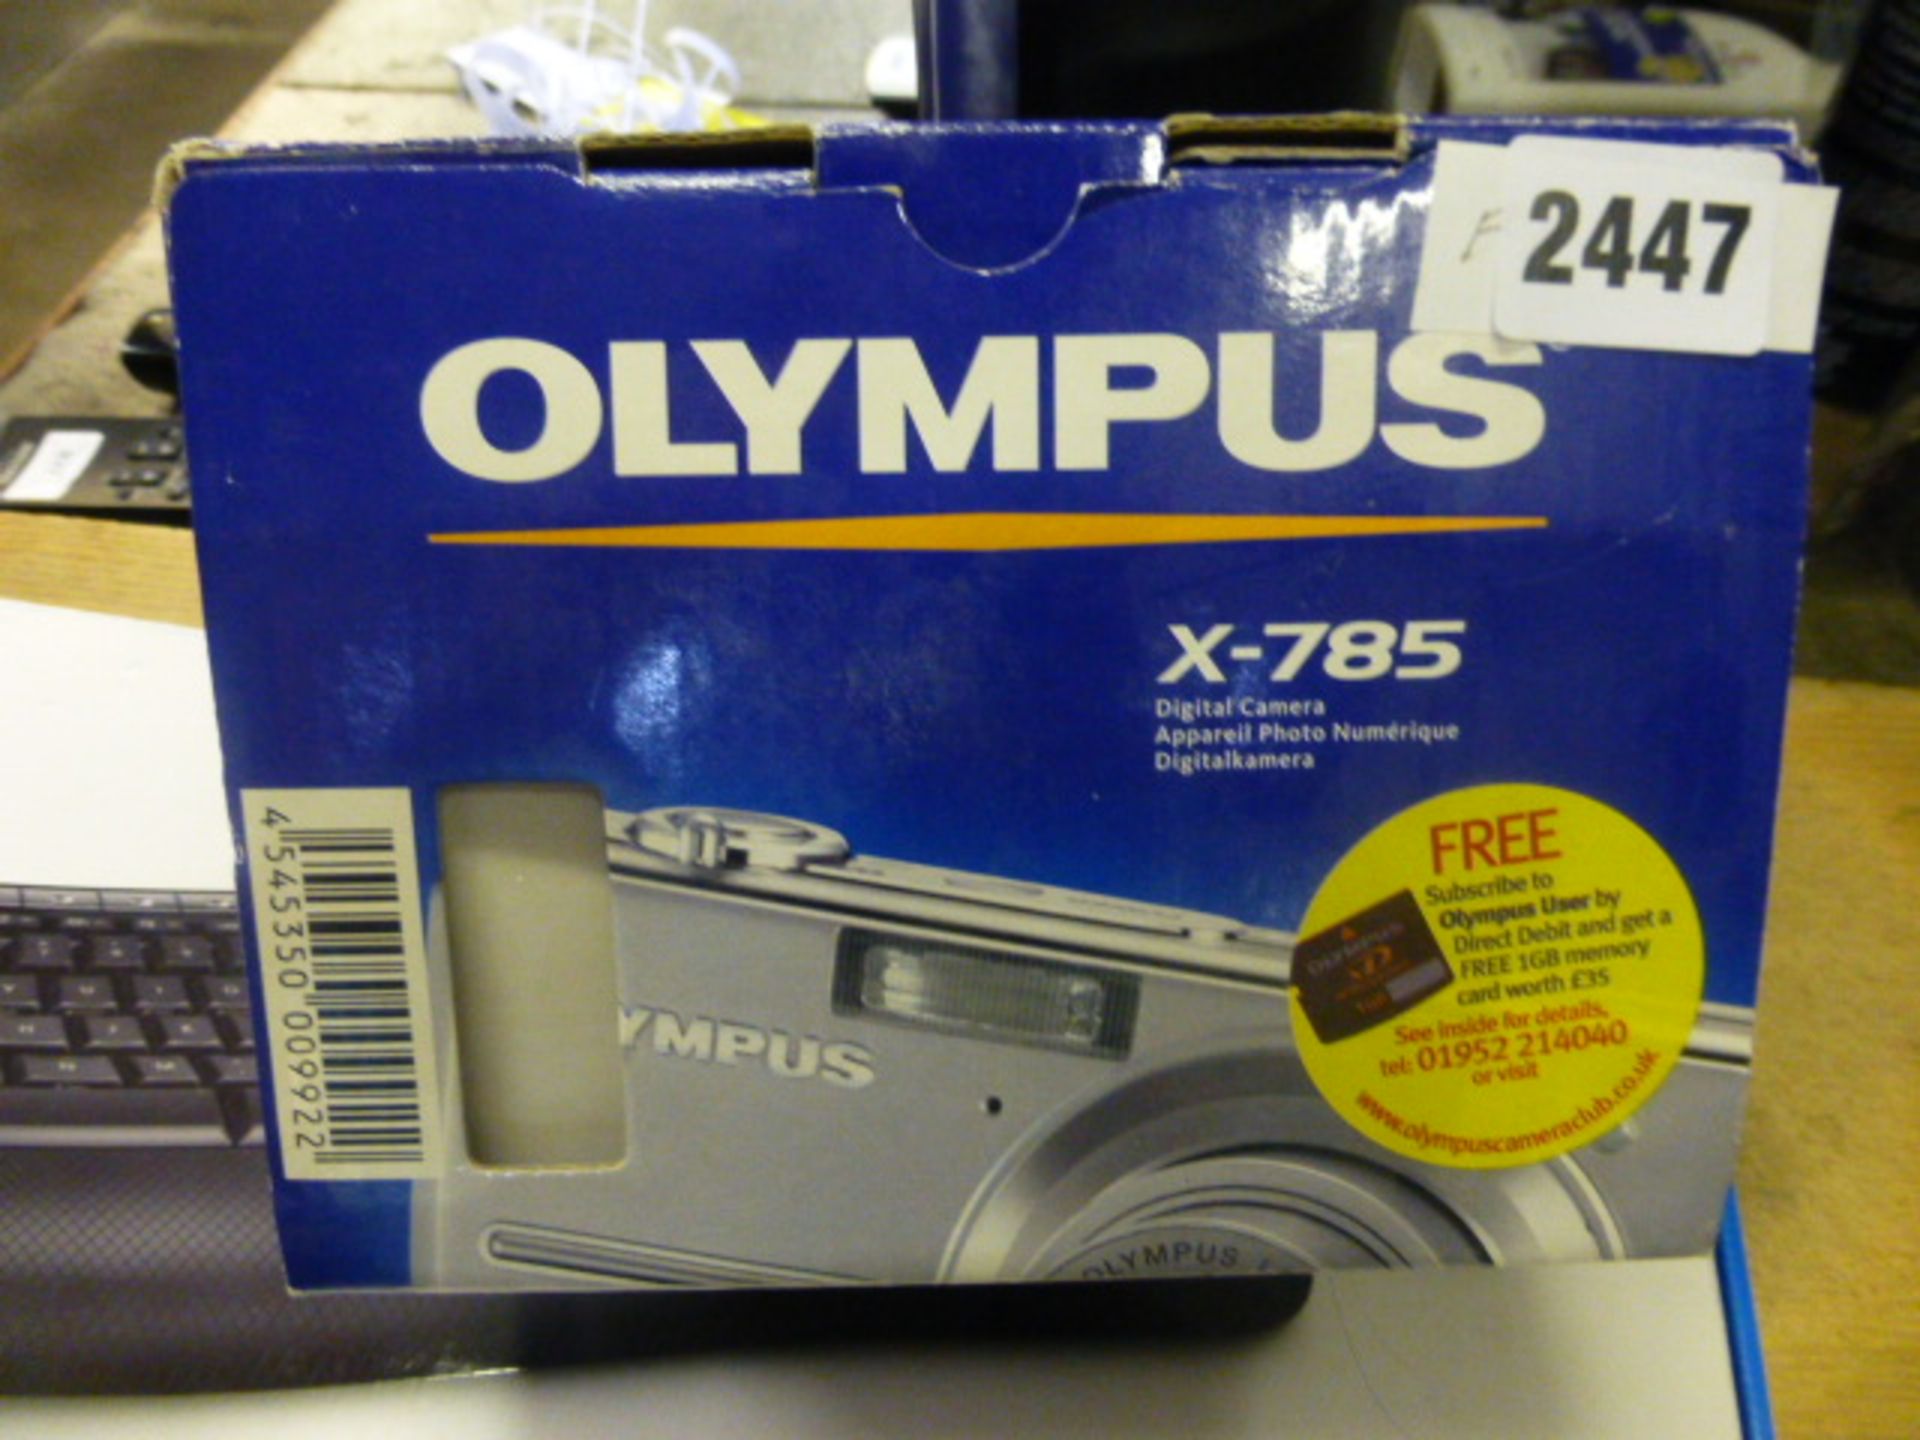 Olympus X785 digital camera in box